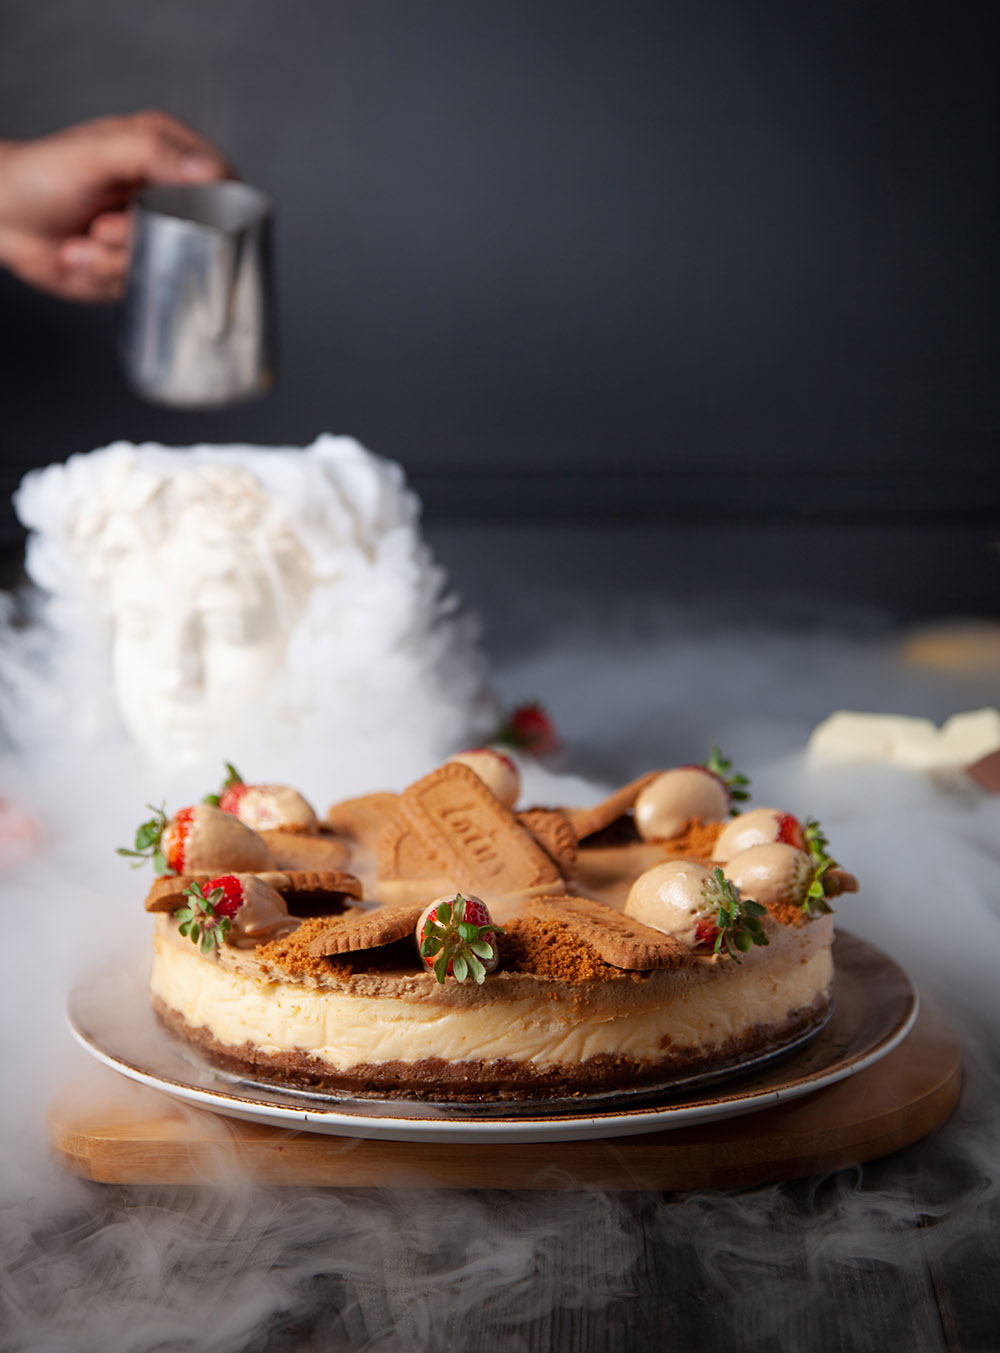 Bisküvili pasta, arka planda kuru buz ile duman oluşturulmuş, bulut benzeri bir görüntü yaratılmış.